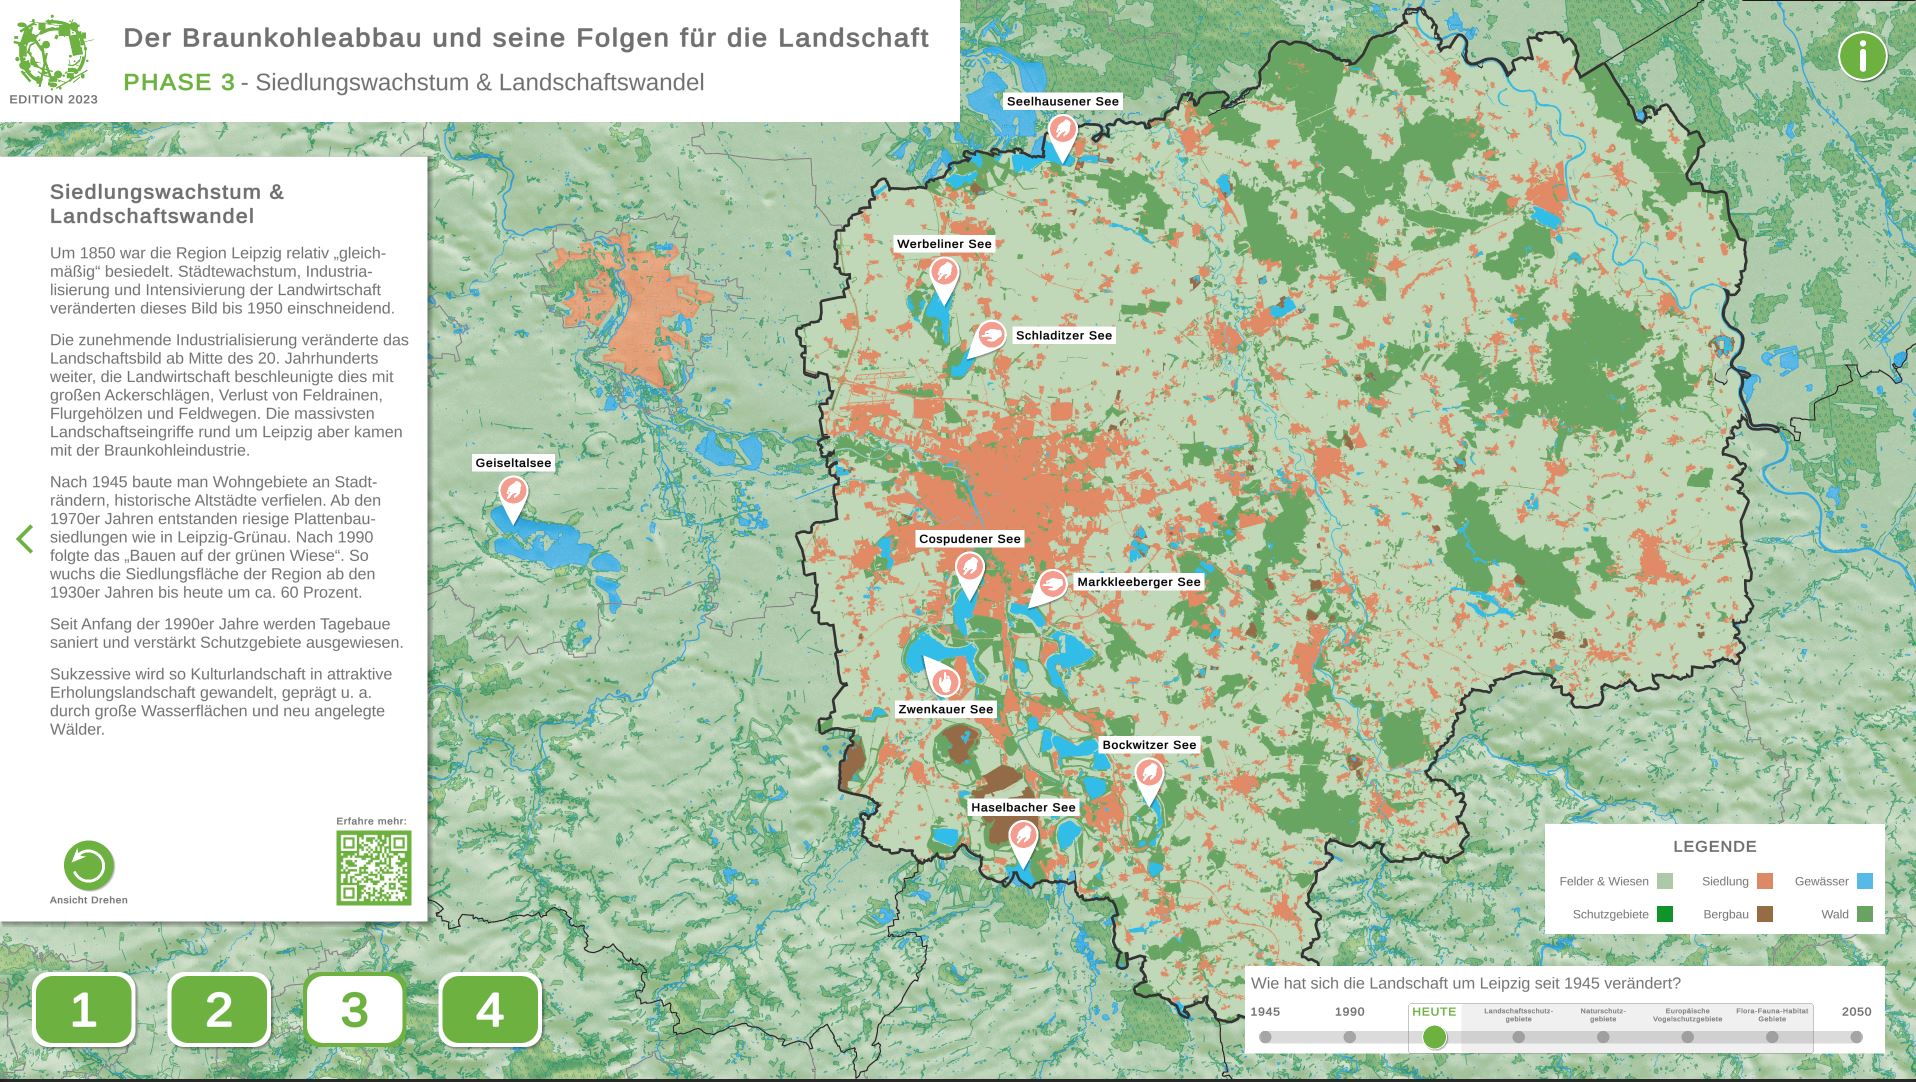 Siedlungswachstum & Landschaftswandel - Inhalte der interaktiven Anwendung als AR-App